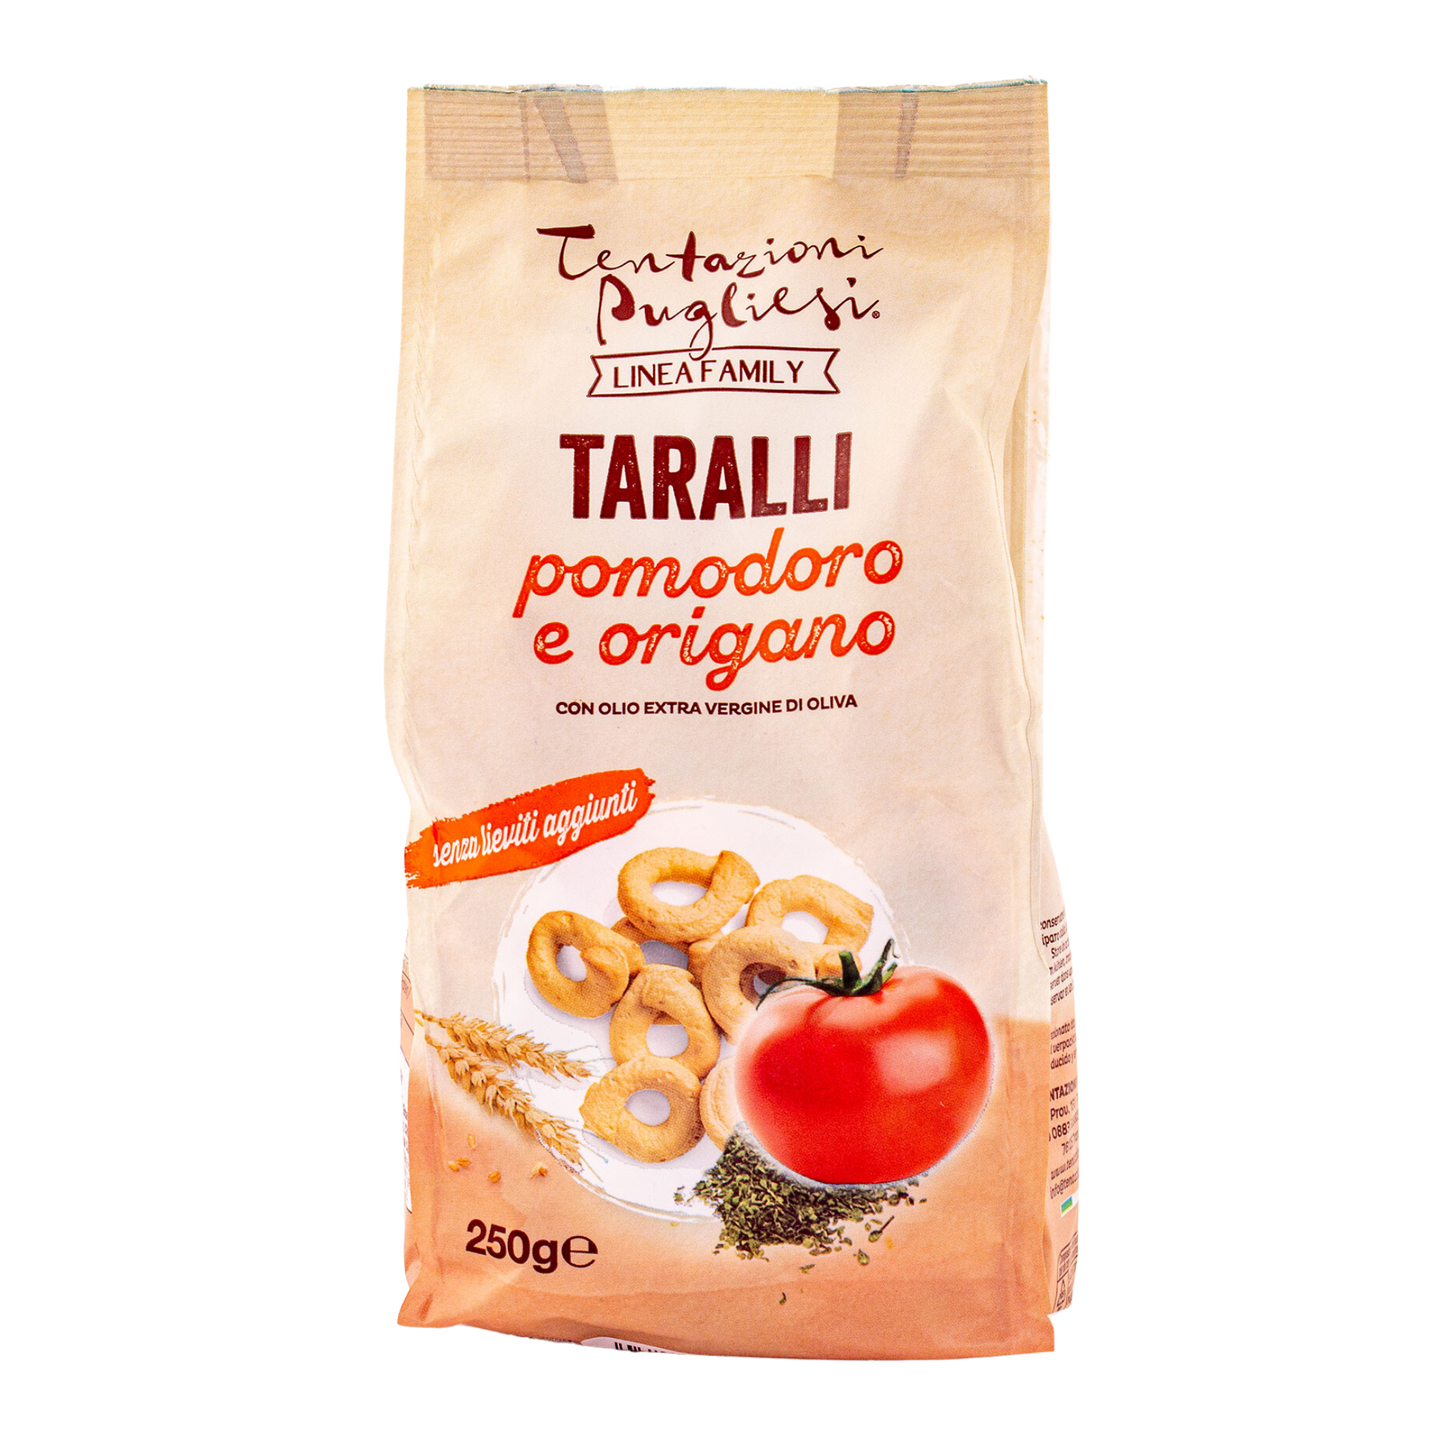 Taralli with Tomato & Oregano 250g